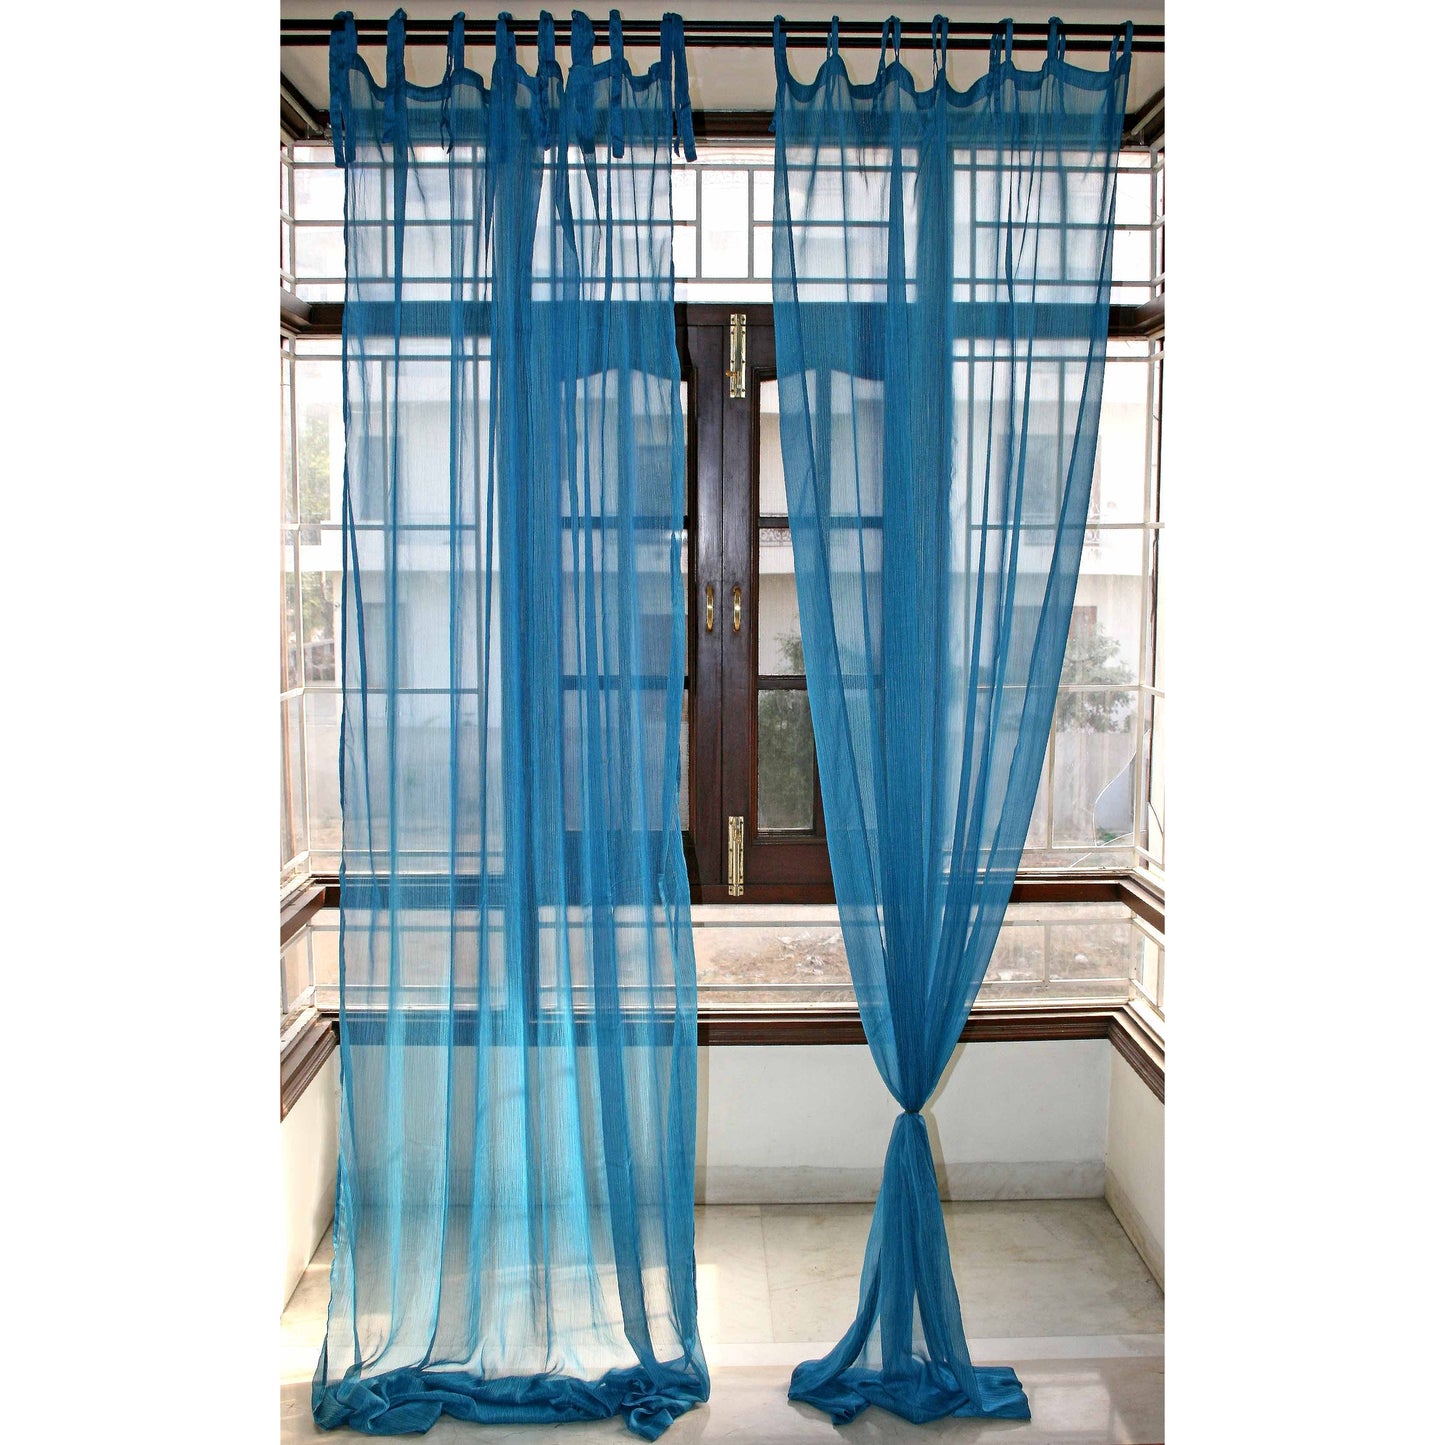 Chiffon Sheer Curtain Pair- Blue | Ready to Ship - The Teal Thread